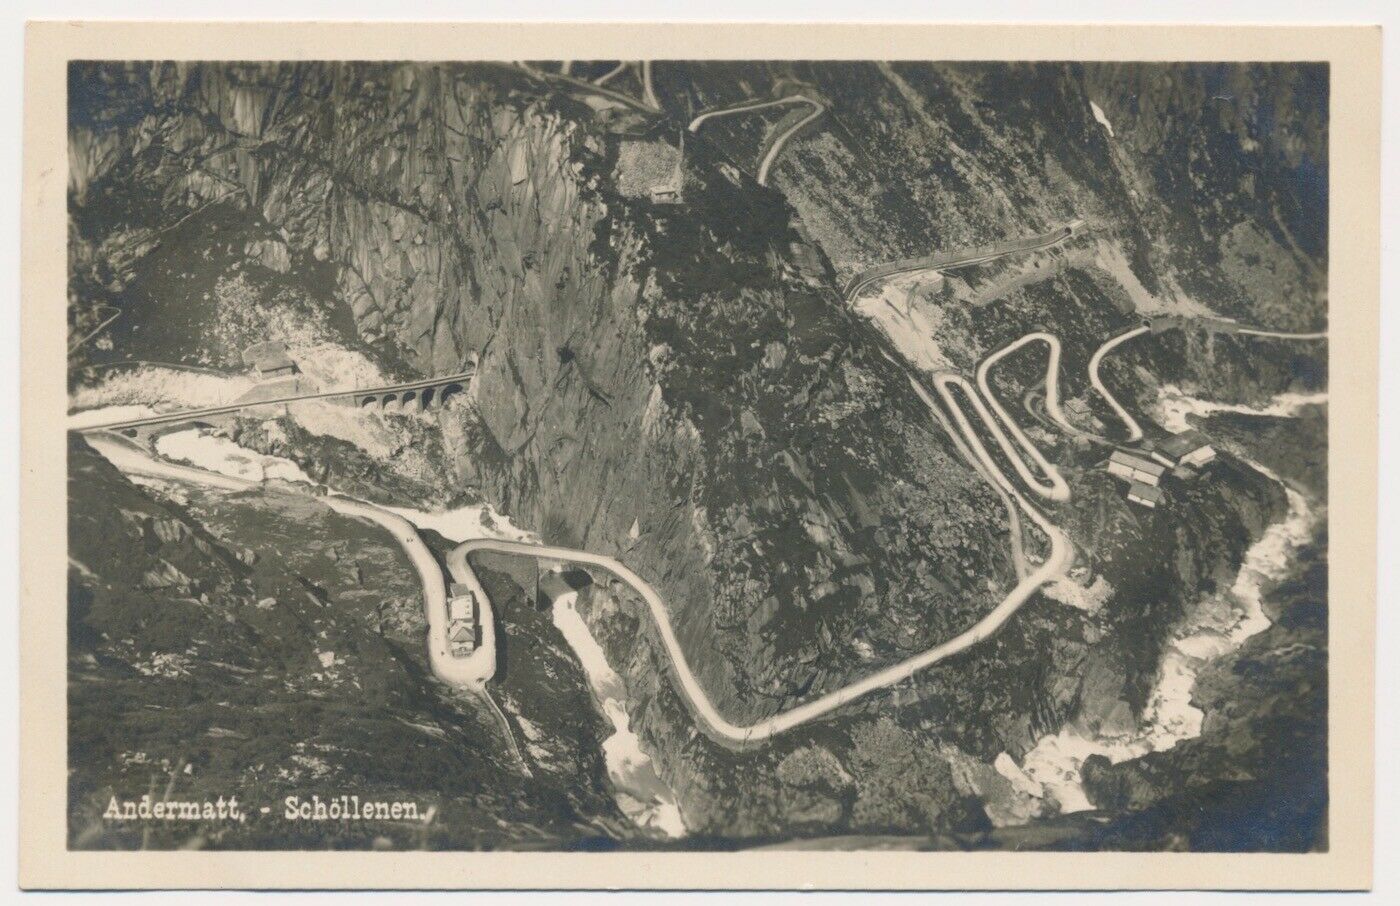 Switzerland (andermatt) Postcard Andermatt - Schollenen 1920s